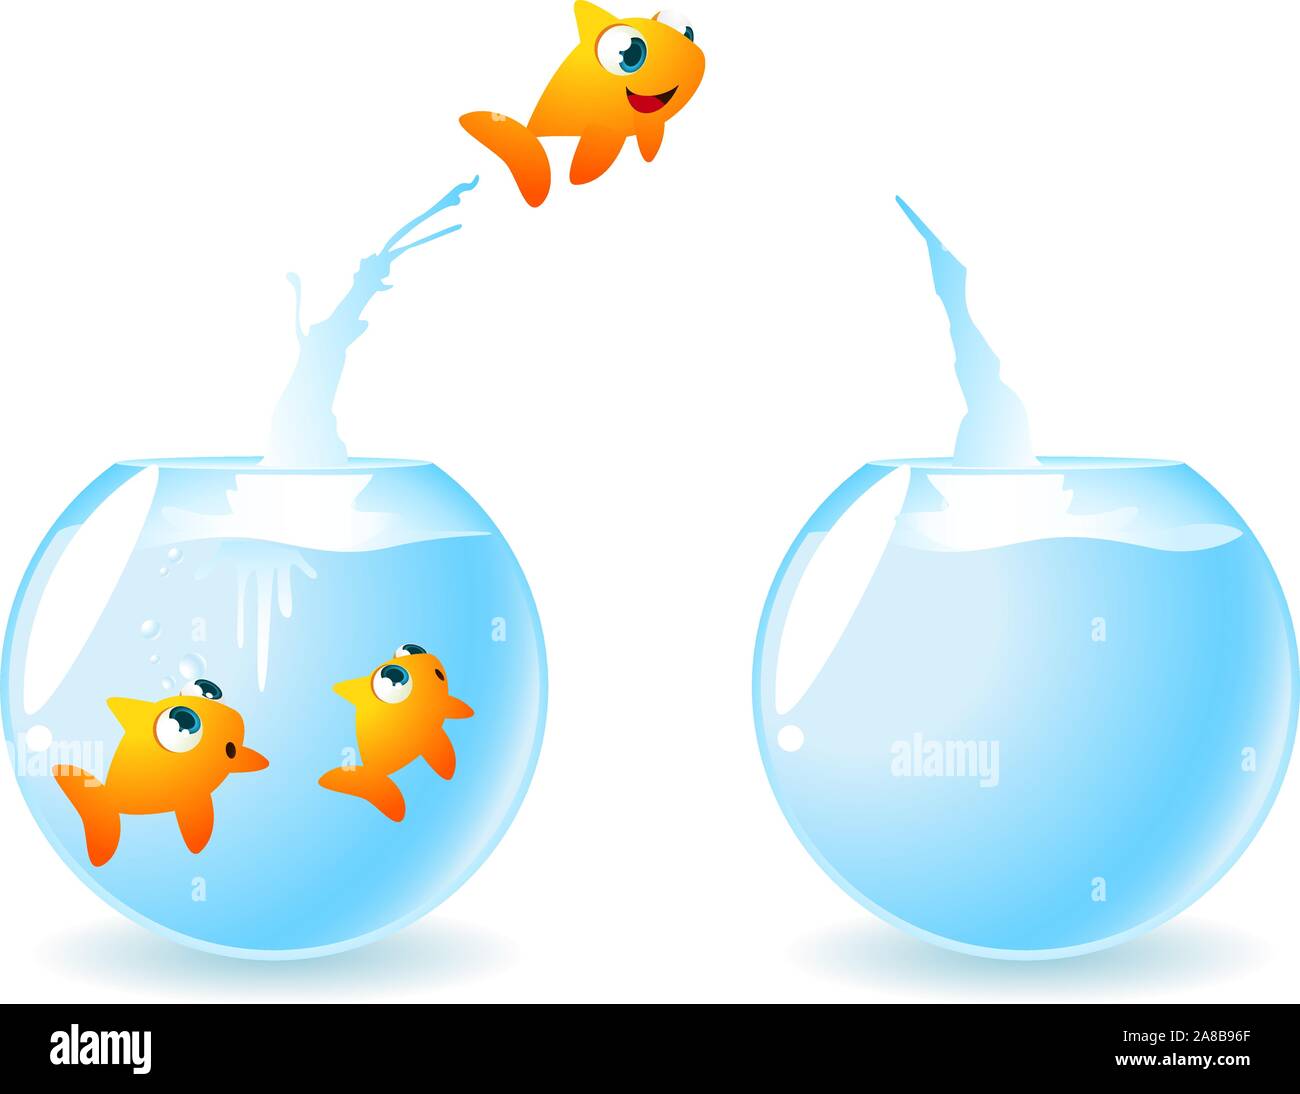 Goldfische brauchen Platz. Kleine Fische springen aus einem Fisch - Schüssel auf einen anderen Fisch - Schüssel, so dass in den ersten zwei Fische Freunde. Vector Illustration. Stock Vektor